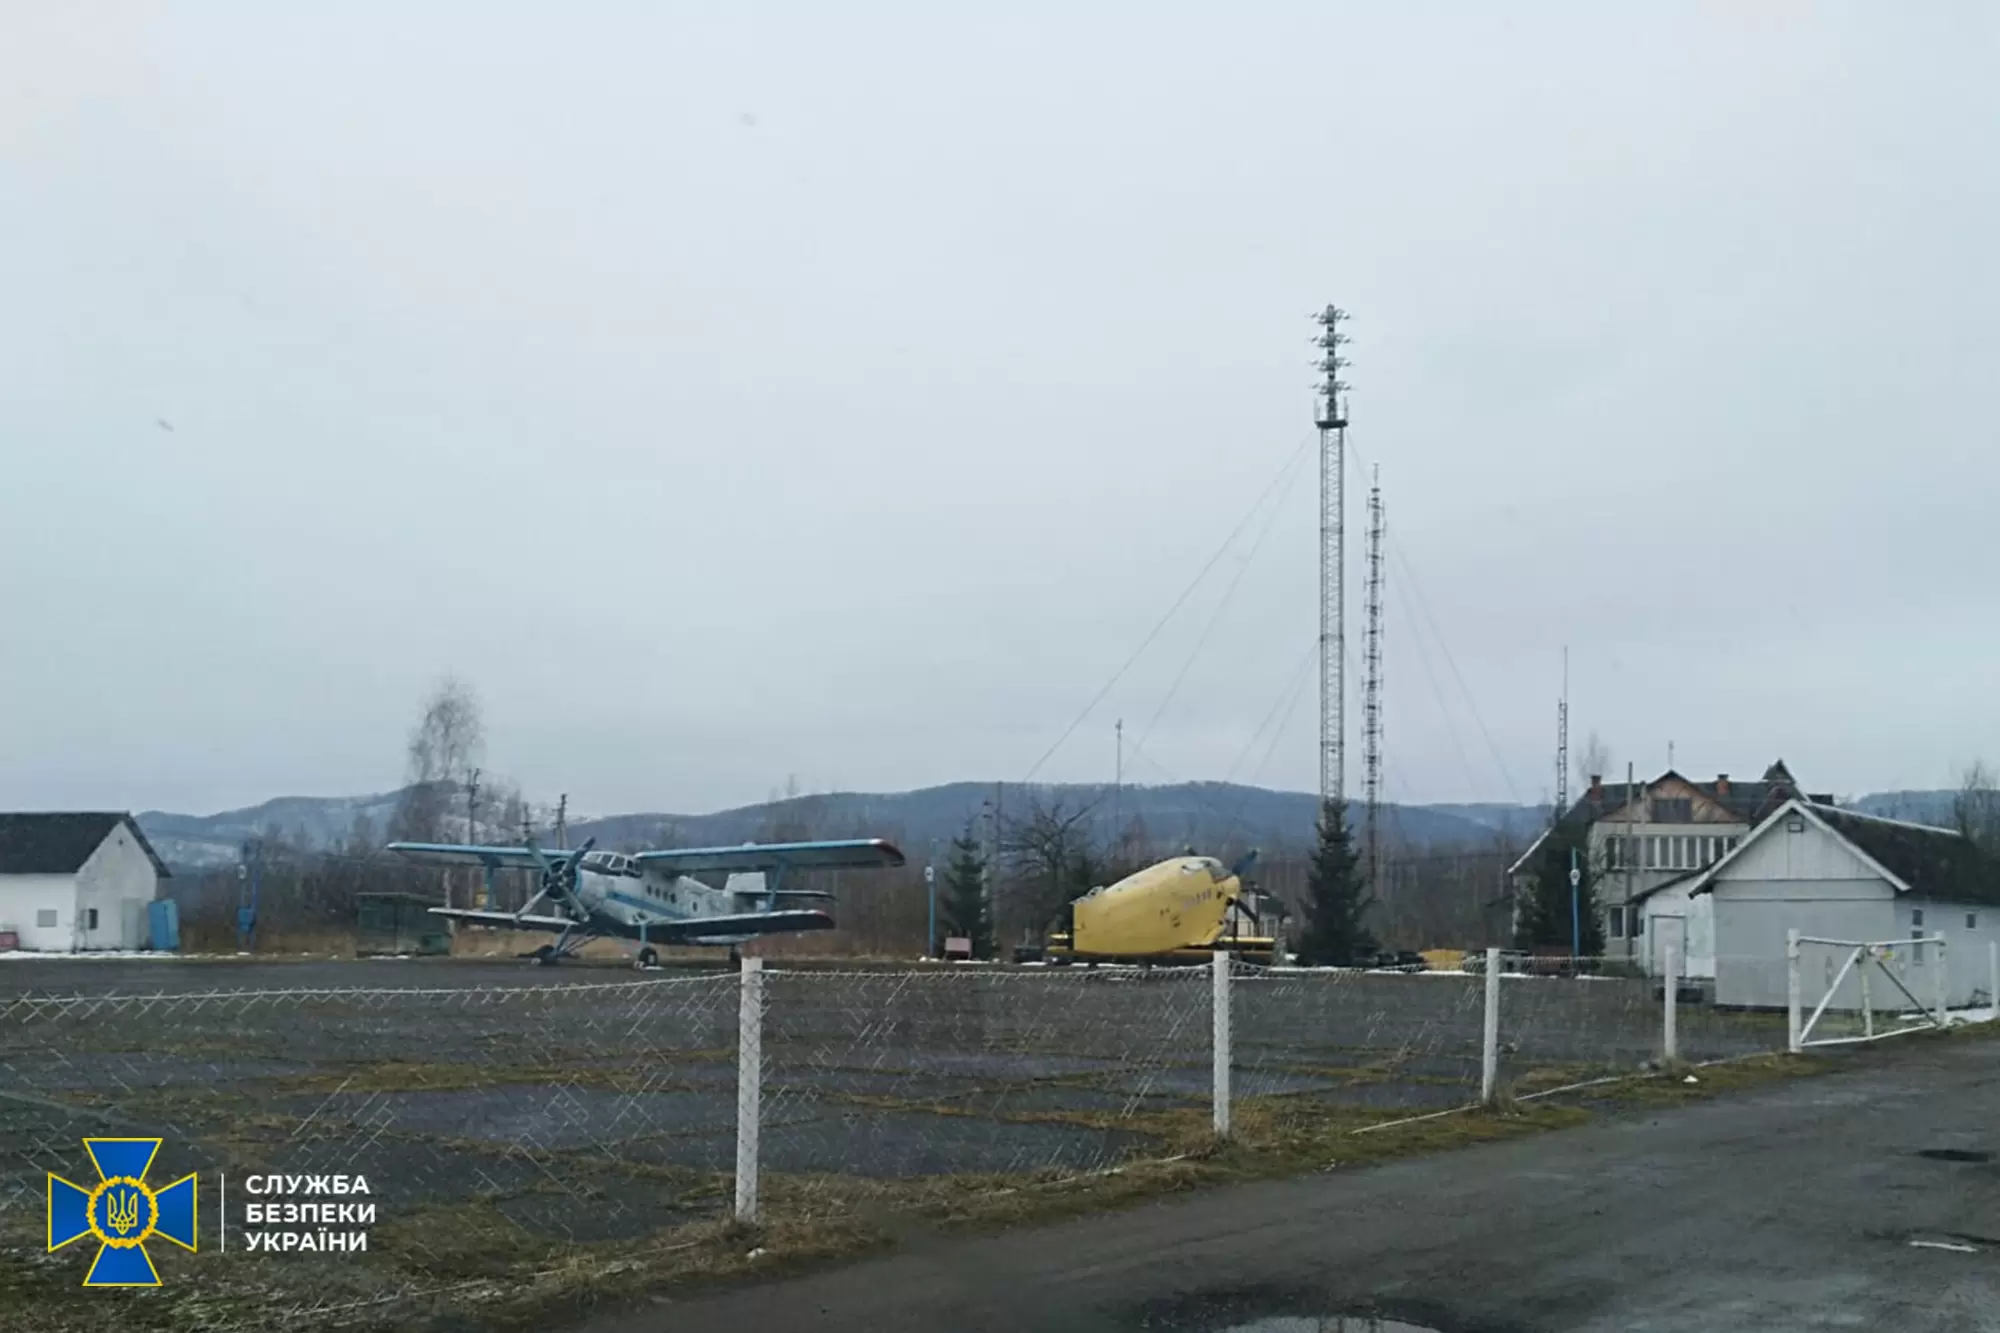 СБУ сообщила о подозрении пилоту Ан-2, перехваченного пограничниками на границе Украины с Румынией